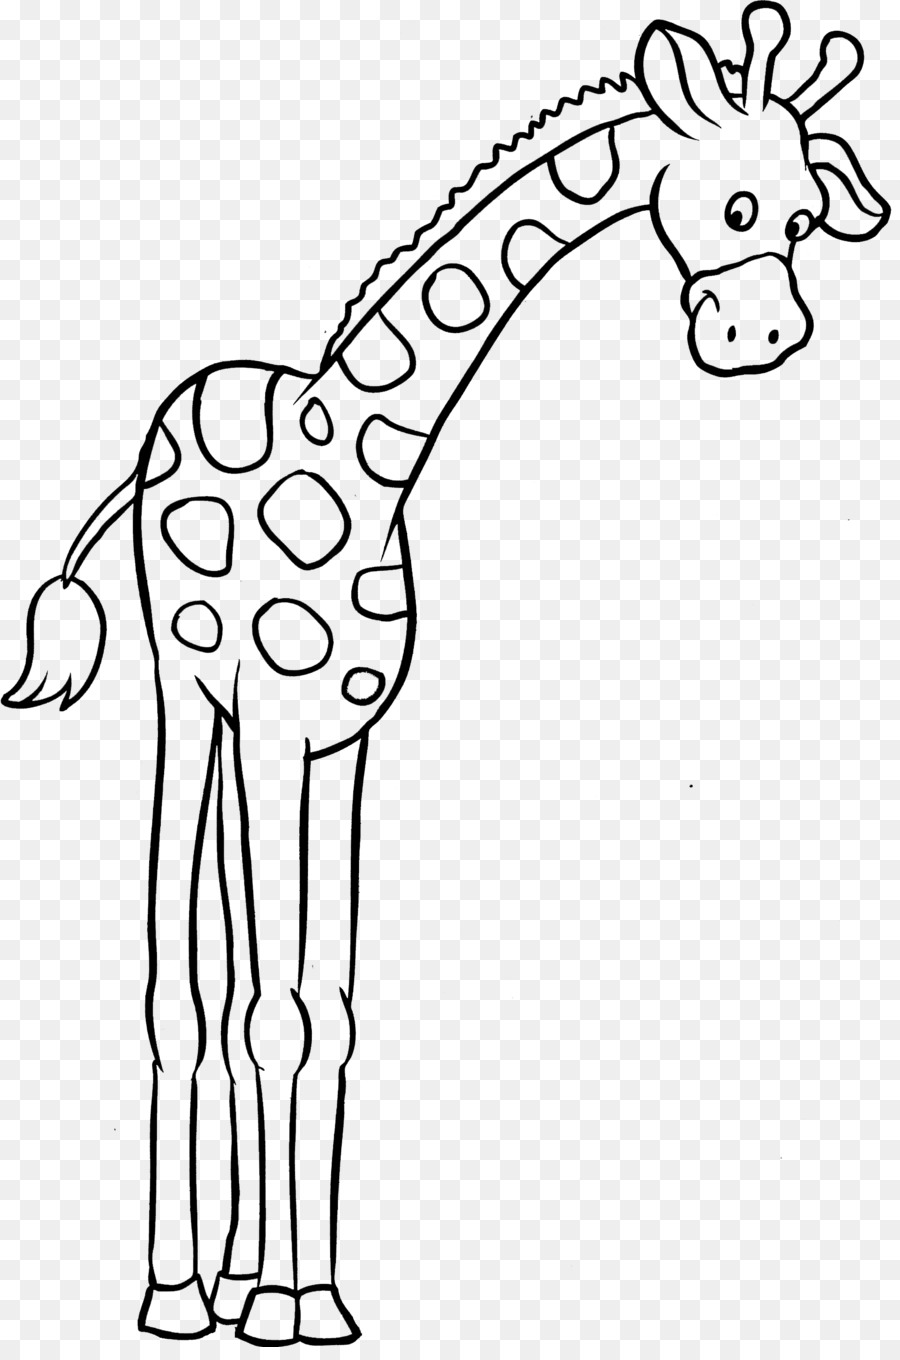 Malbuch, Kind clipart - Giraffe